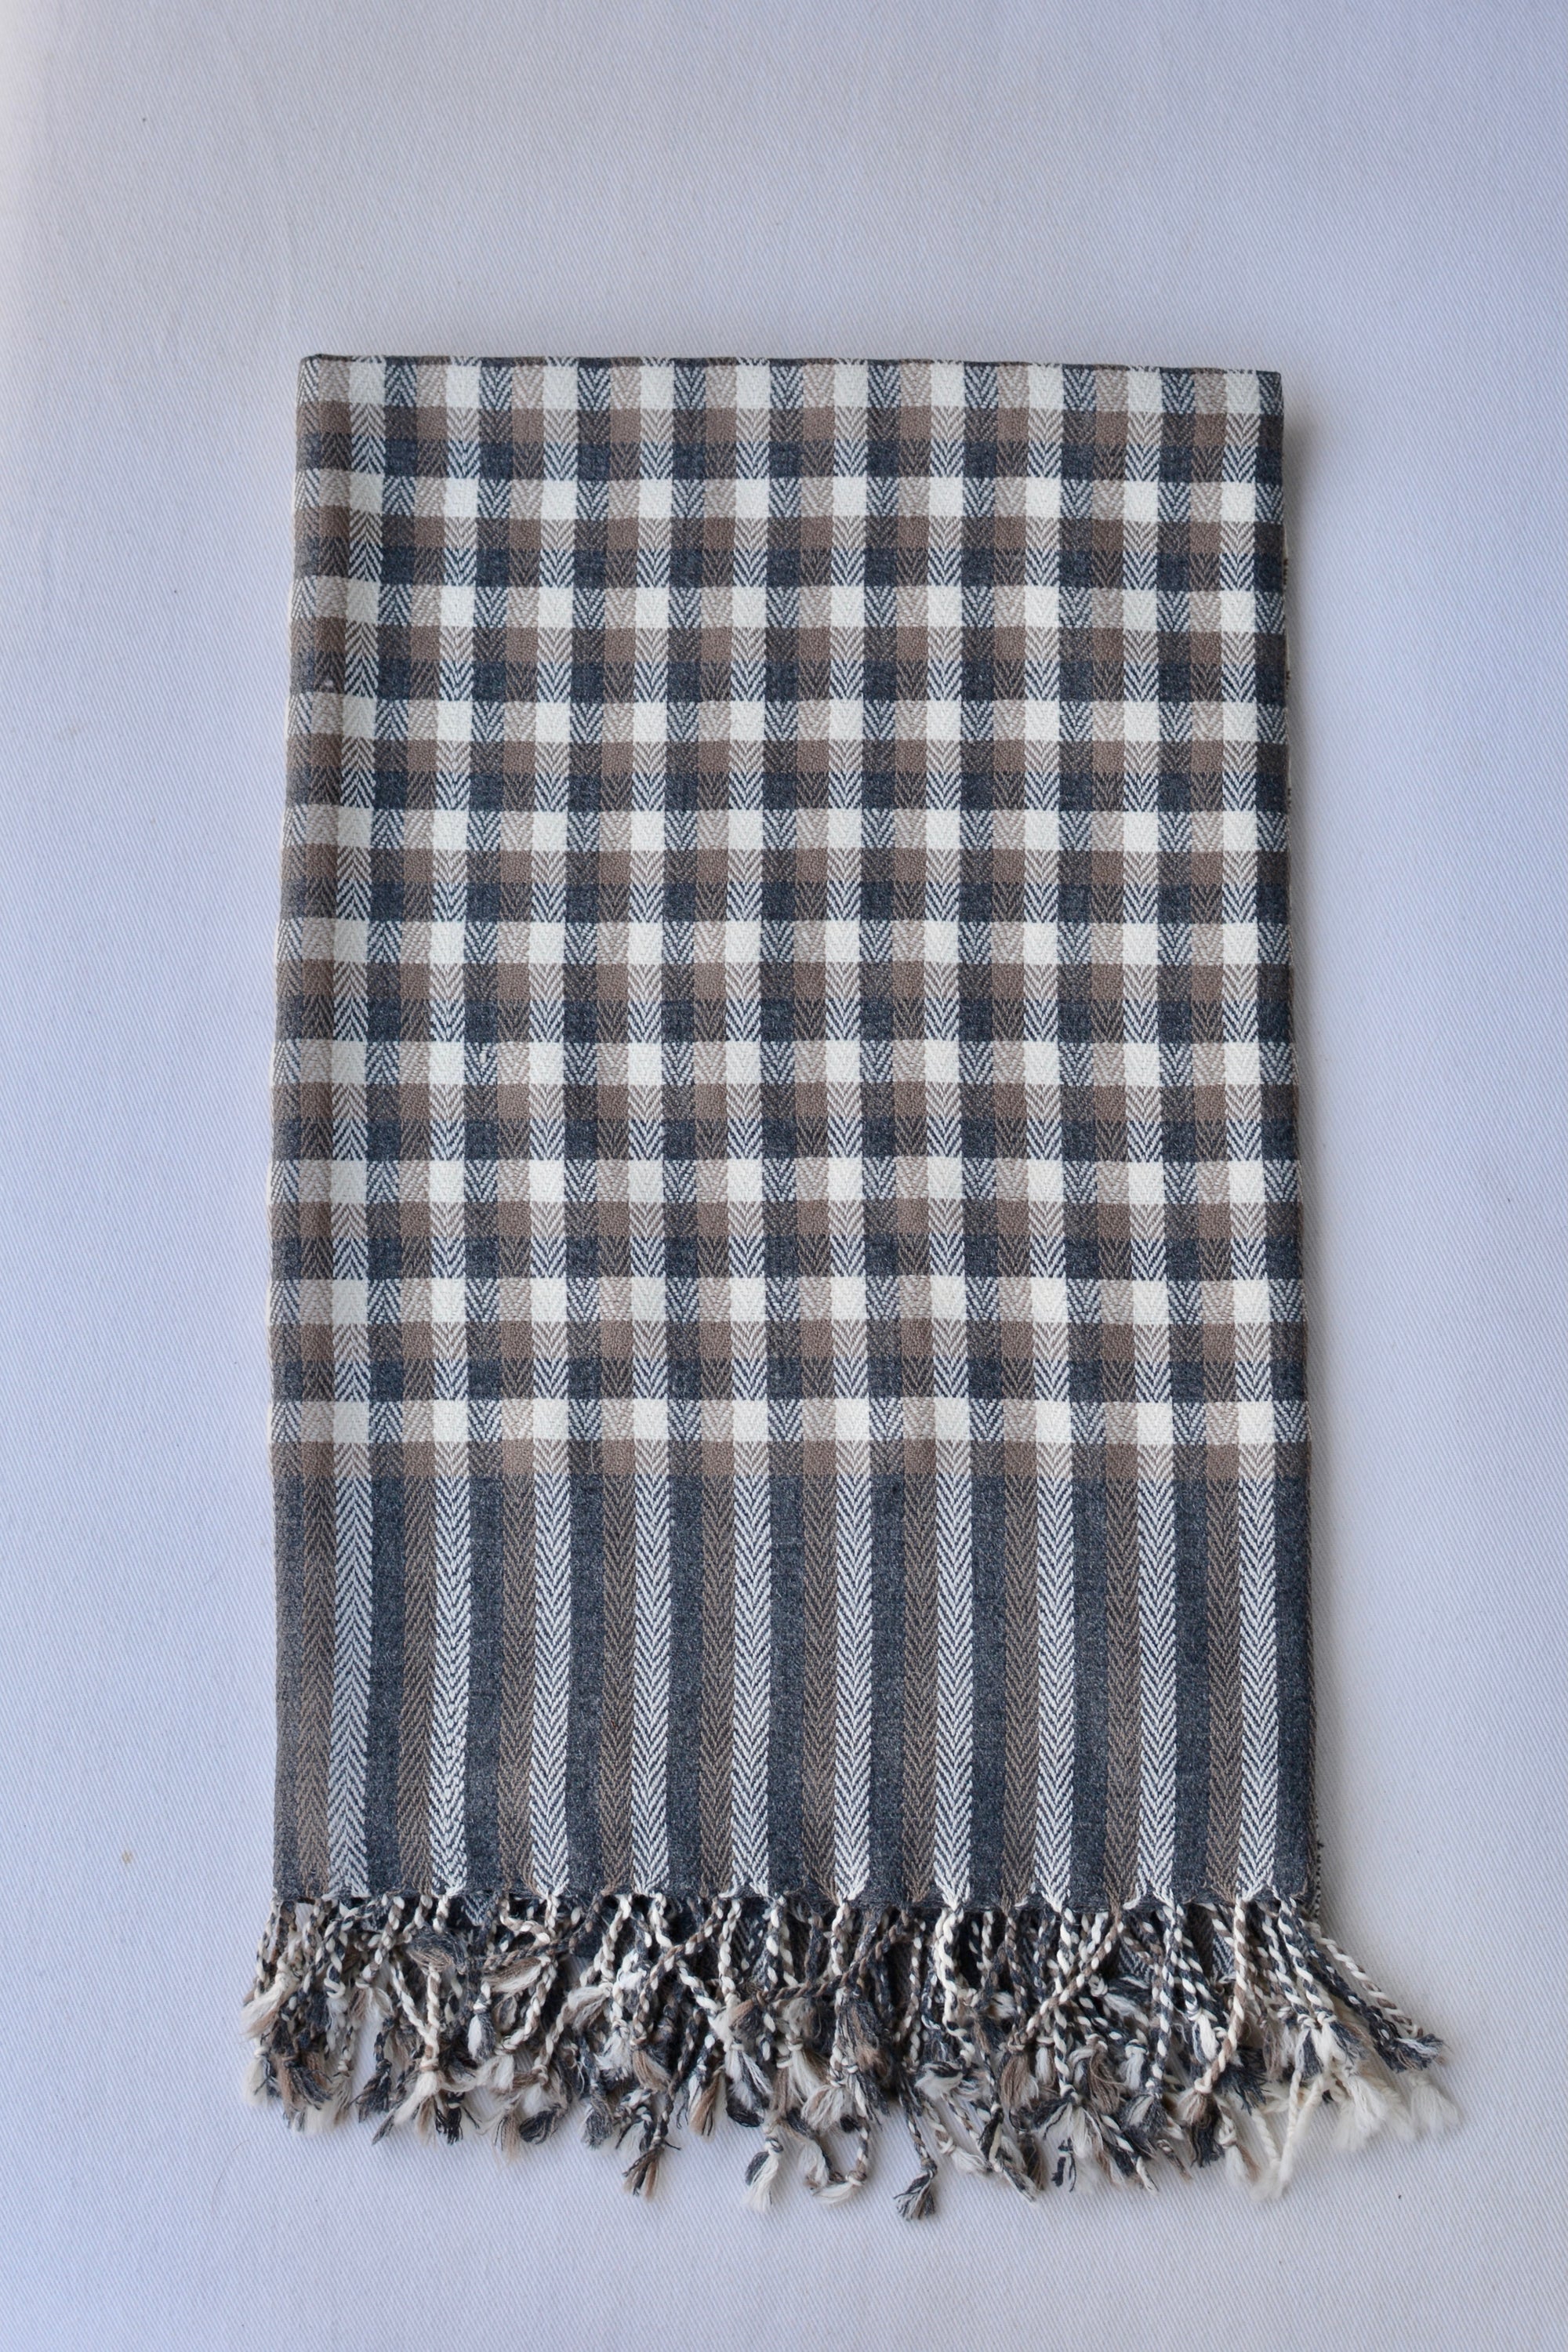 Checkered Merino Wool Throw |TerraKlay